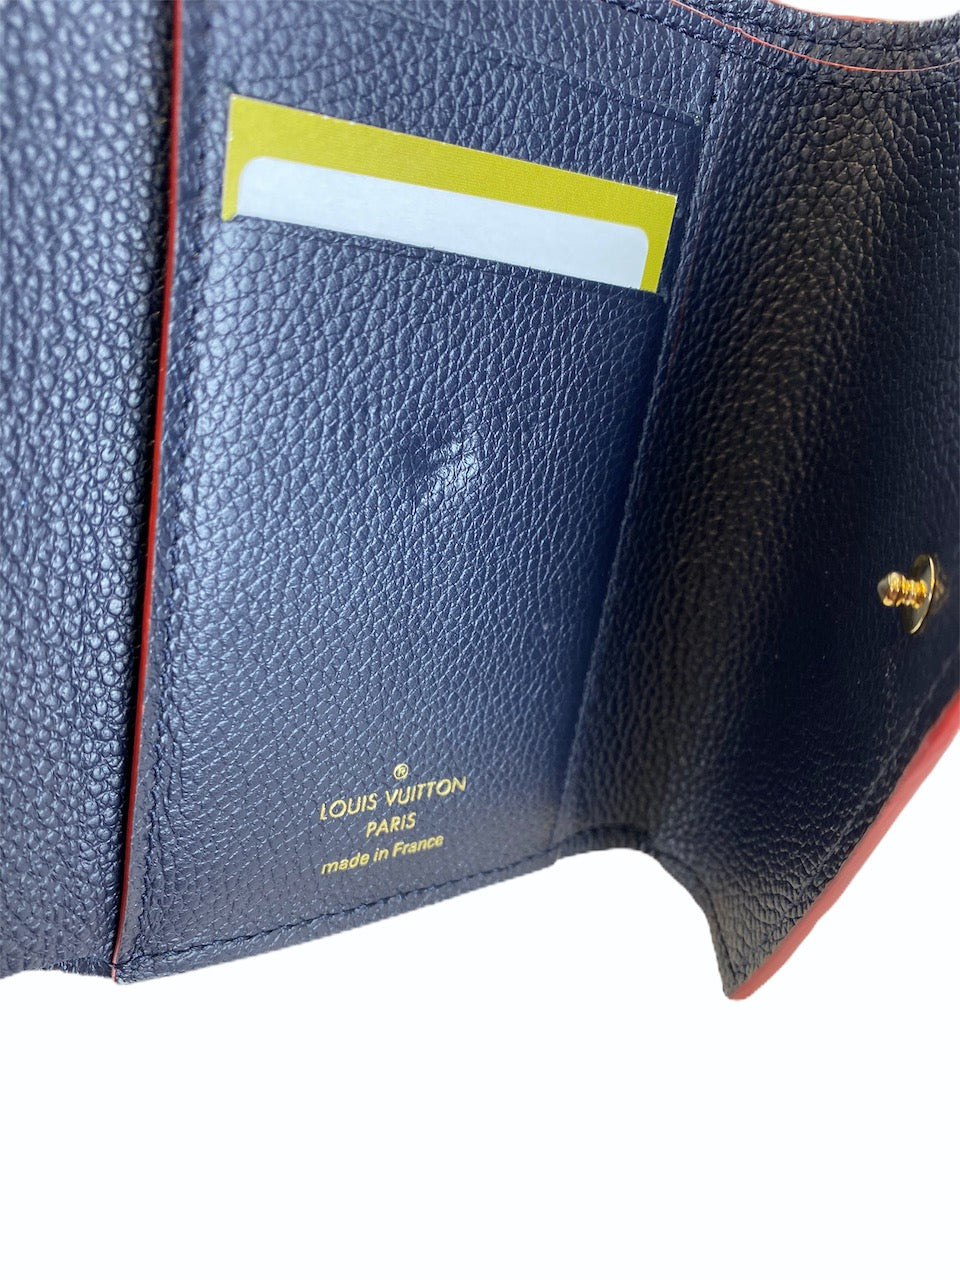 Louis Vuitton Navy Empreinte Victorine Wallet  - As Seen on Instagram 2/9/20 - Siopaella Designer Exchange